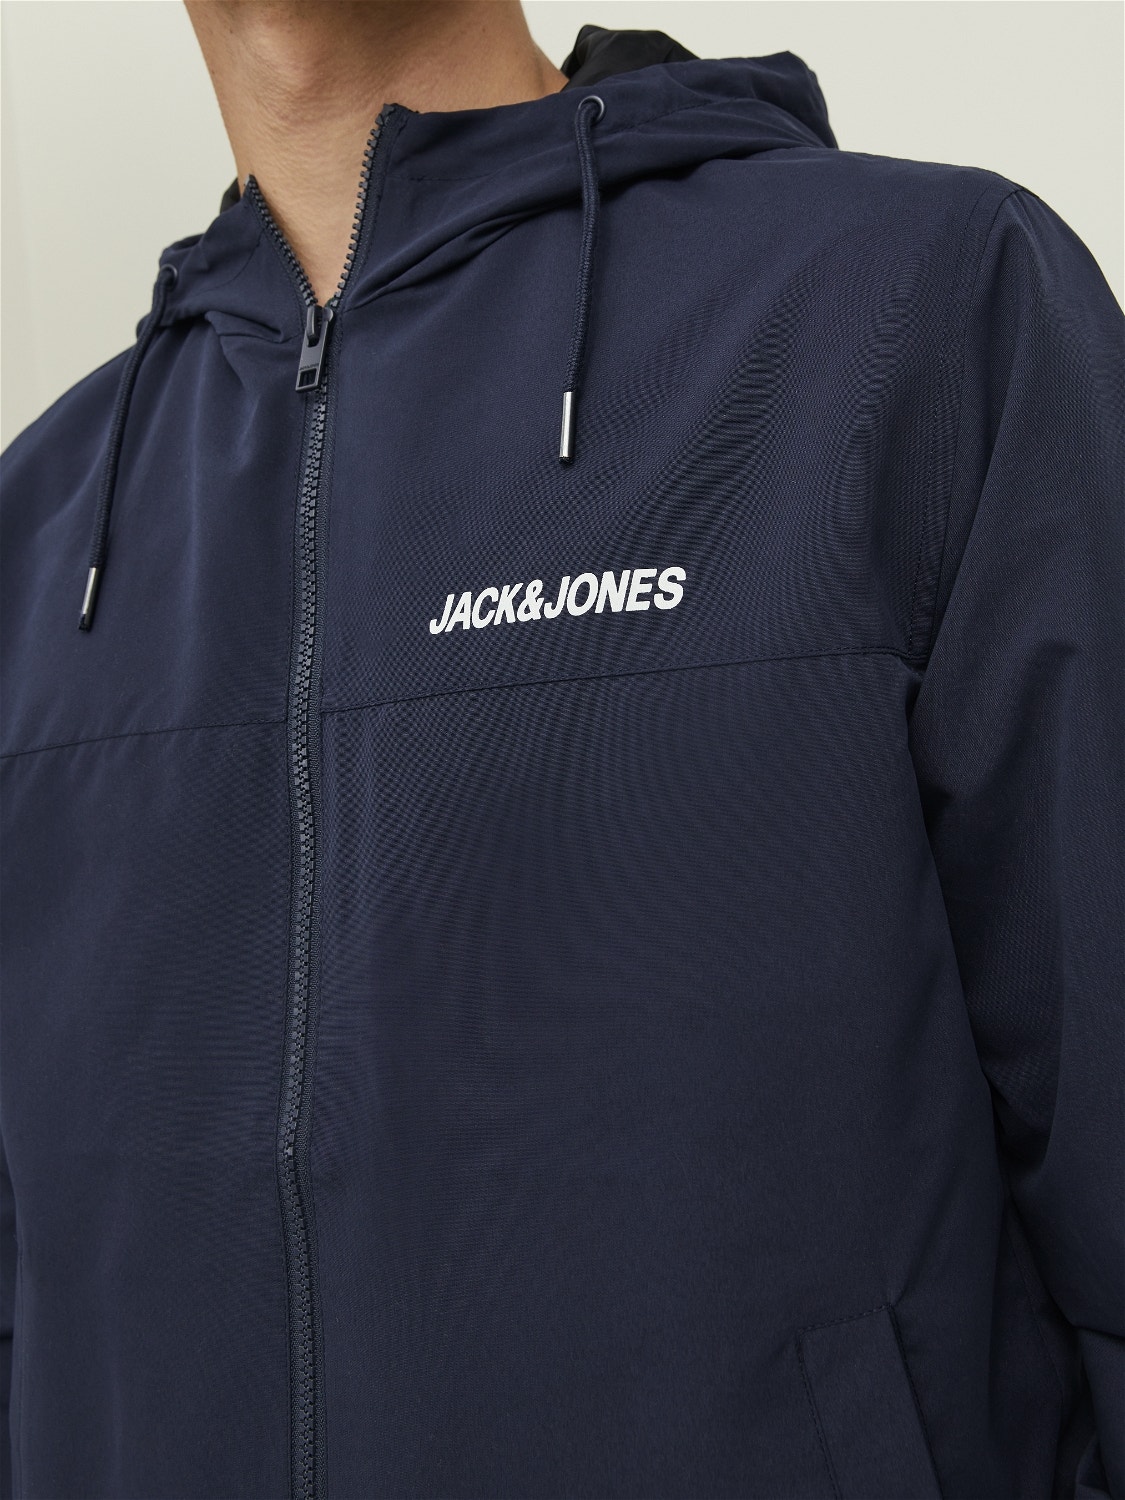 Bomber jacket with 20% discount! | Jack & Jones®